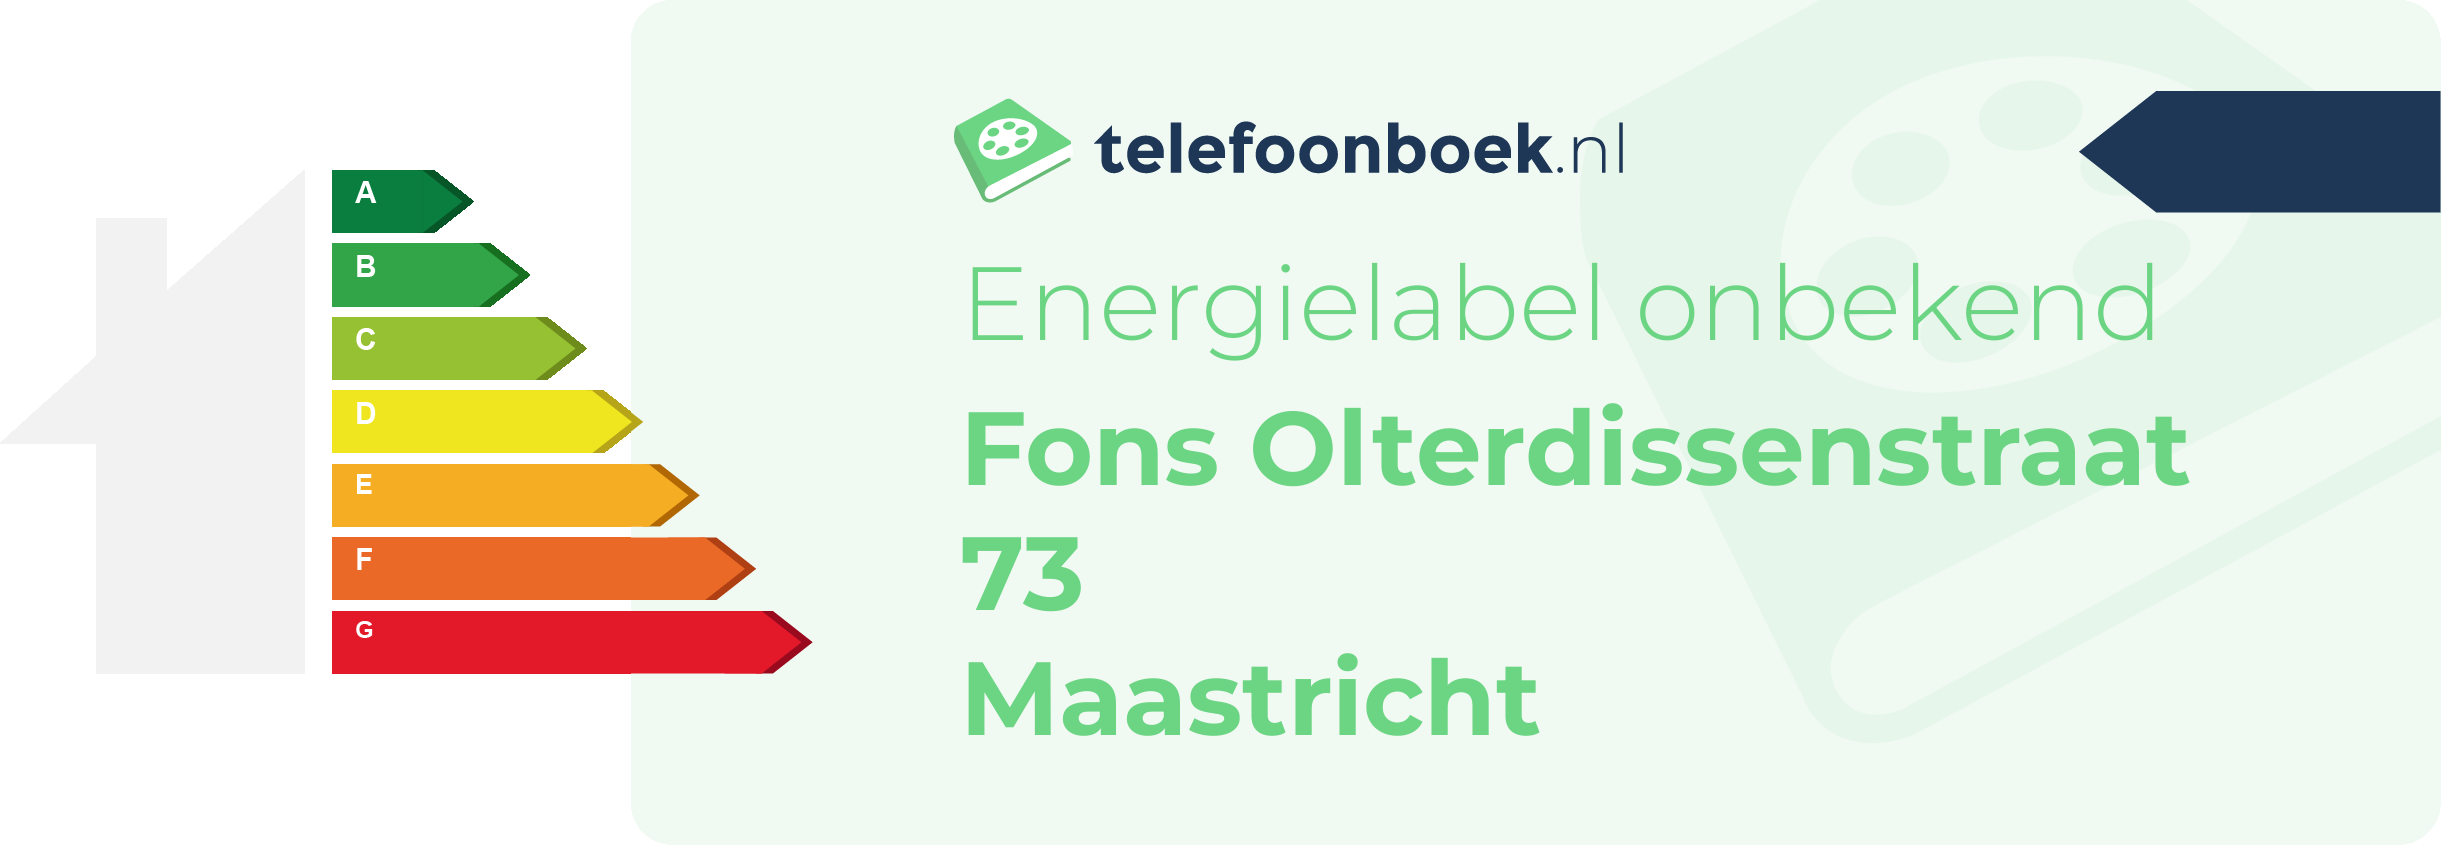 Energielabel Fons Olterdissenstraat 73 Maastricht